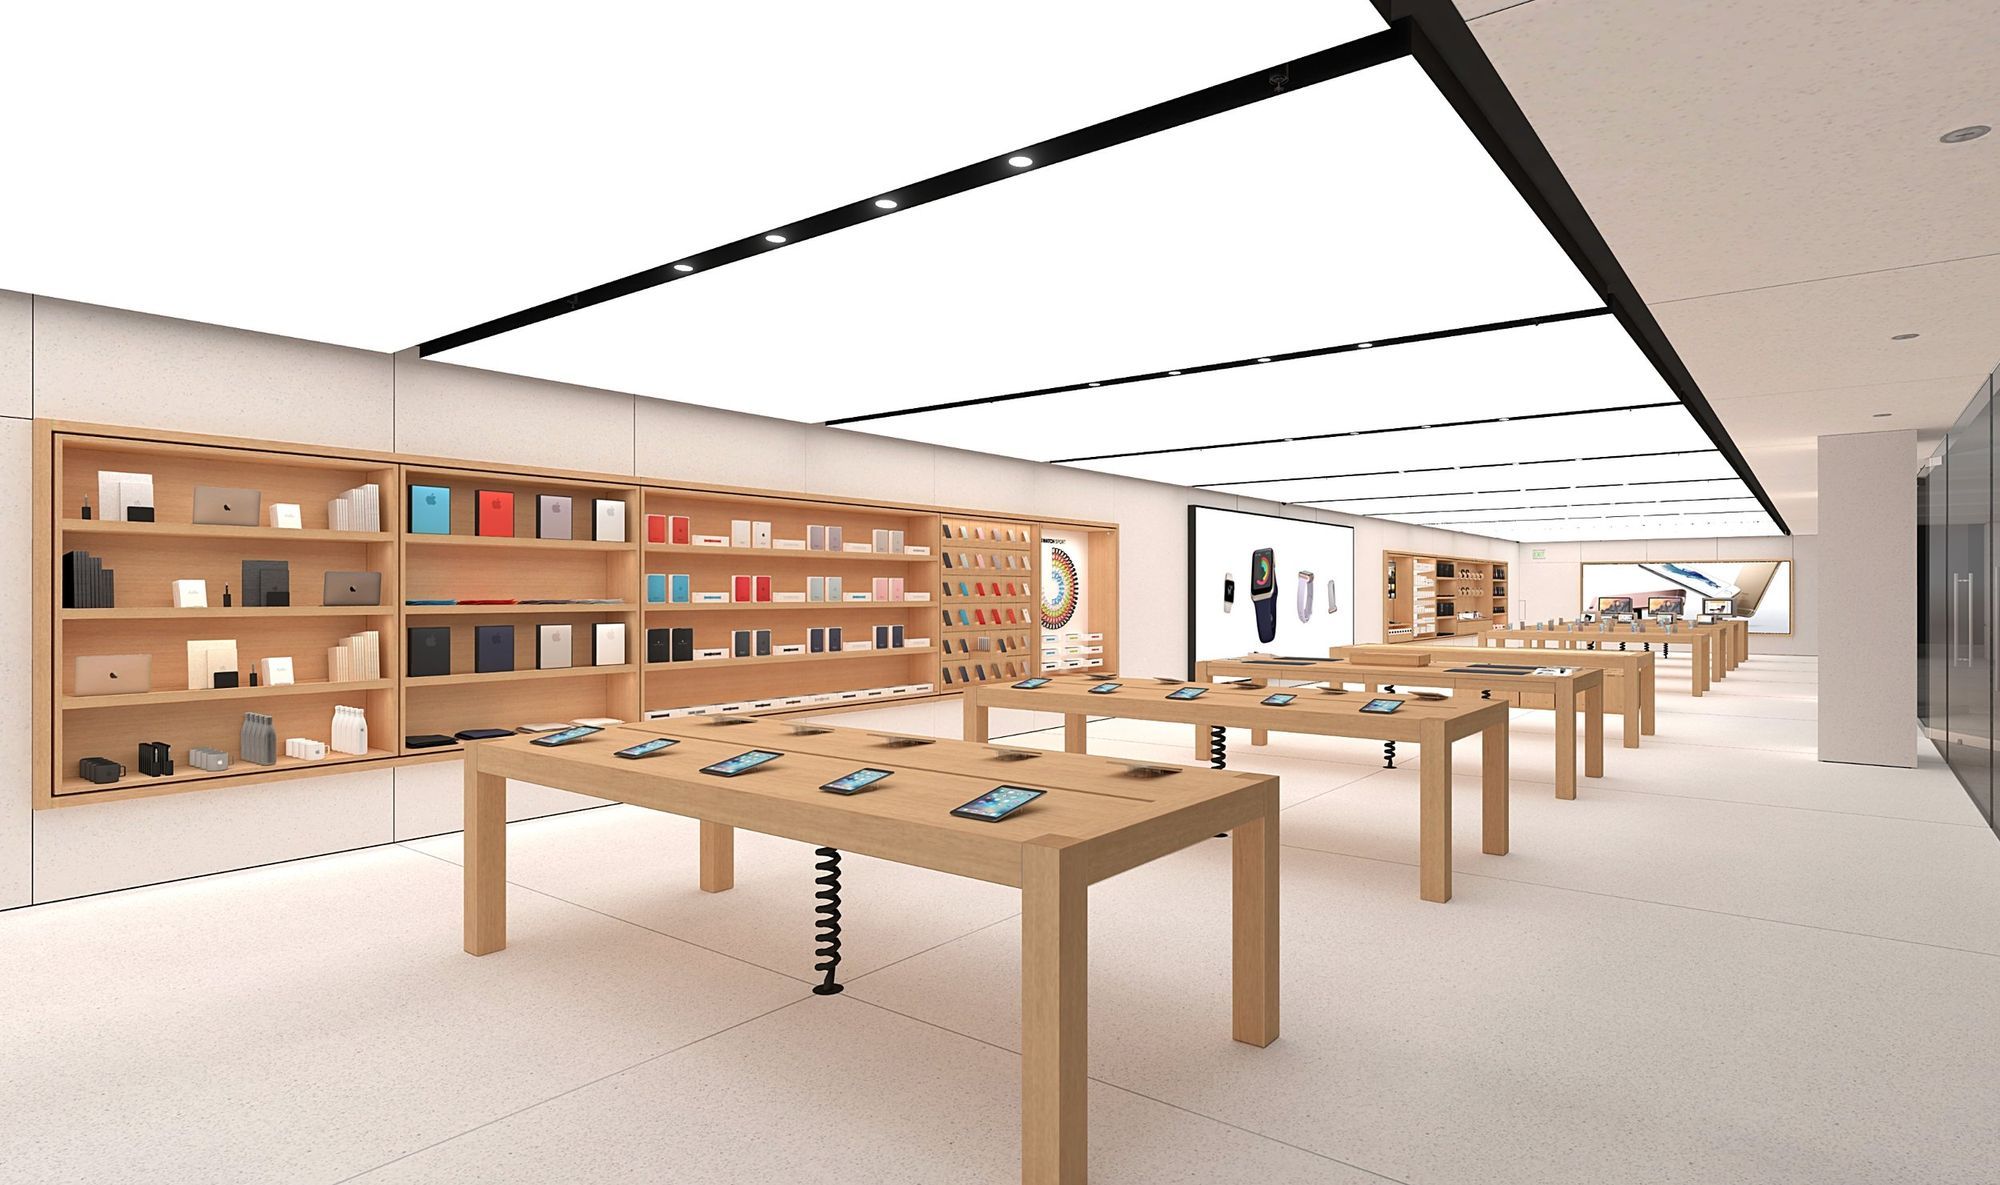 Приложения: энтузиаст воссоздал в 3D несколько магазинов Apple Store